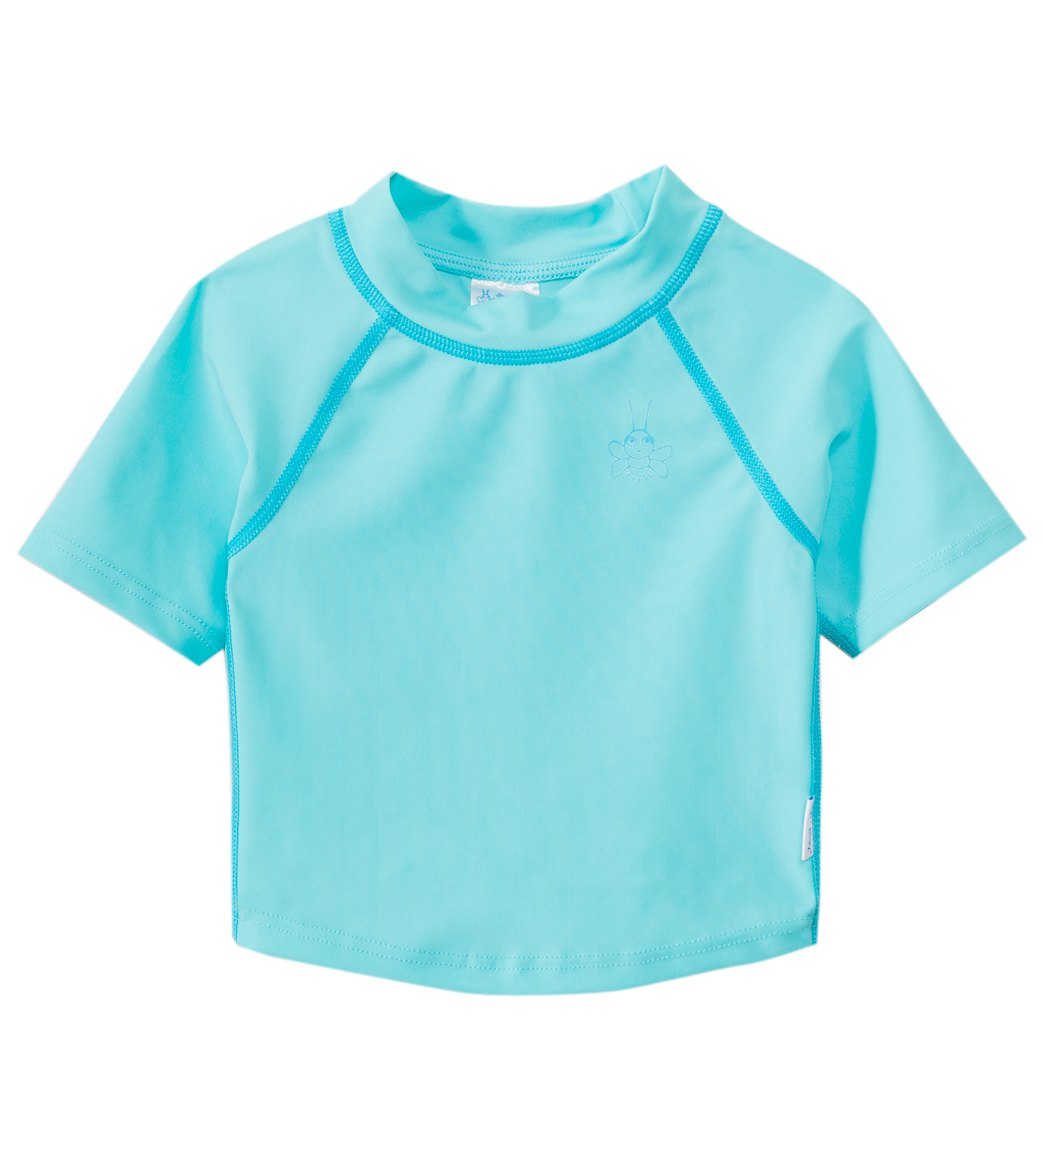 UV SKINZ Turquoise UPF 50+ Sunwear Rashguard Swim Top